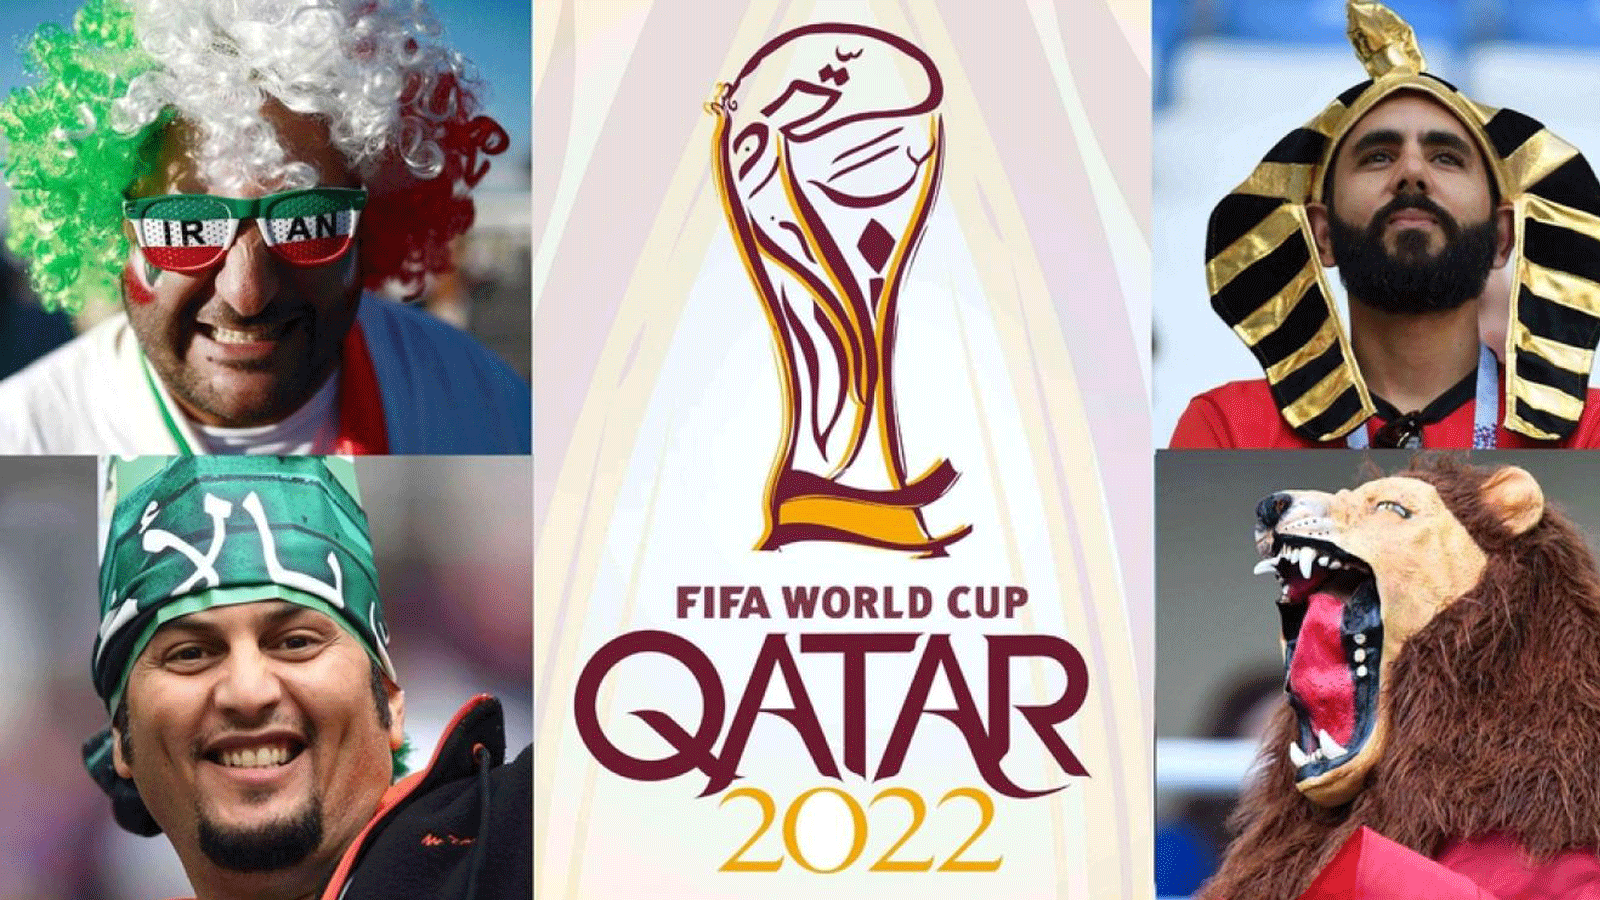 مشجعون من إيران ومصر والمغرب والمملكة العربية السعودية في مونديال روسيا 2018 على ملصق إعلان استقبال قطر لكأس العالم في العام 2022